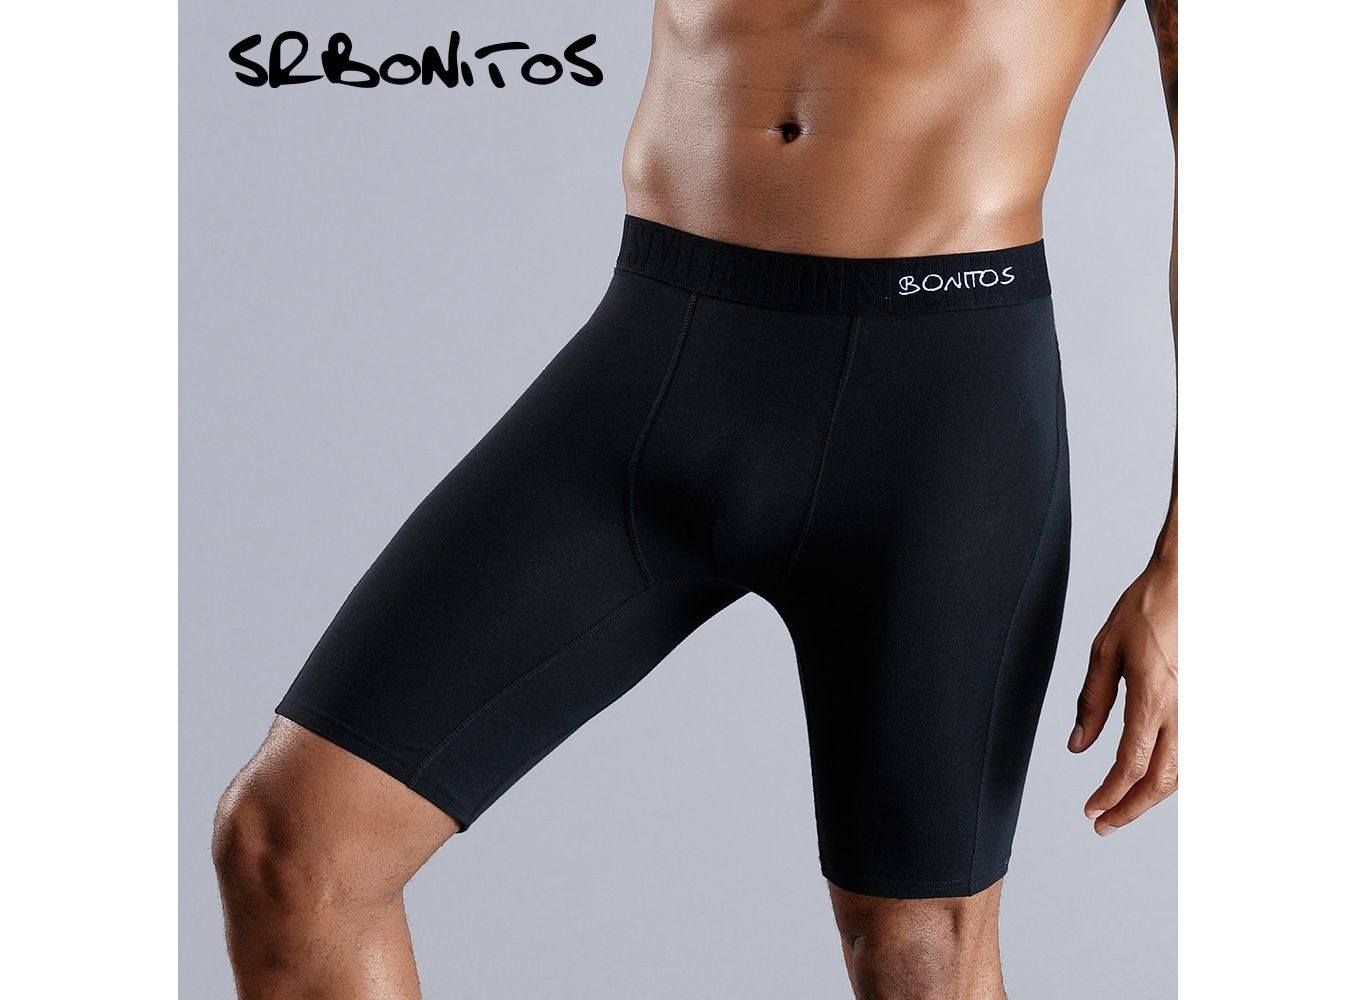 https://protechshop.co.uk/images/thumbnails/1357/1000/detailed/40/Long-Men-Boxer-Underwear-Men-Underware-Boxer-Shorts-Mens-Cotton-Long-Leg-Boxers-Underpants-for-Brand.jpg